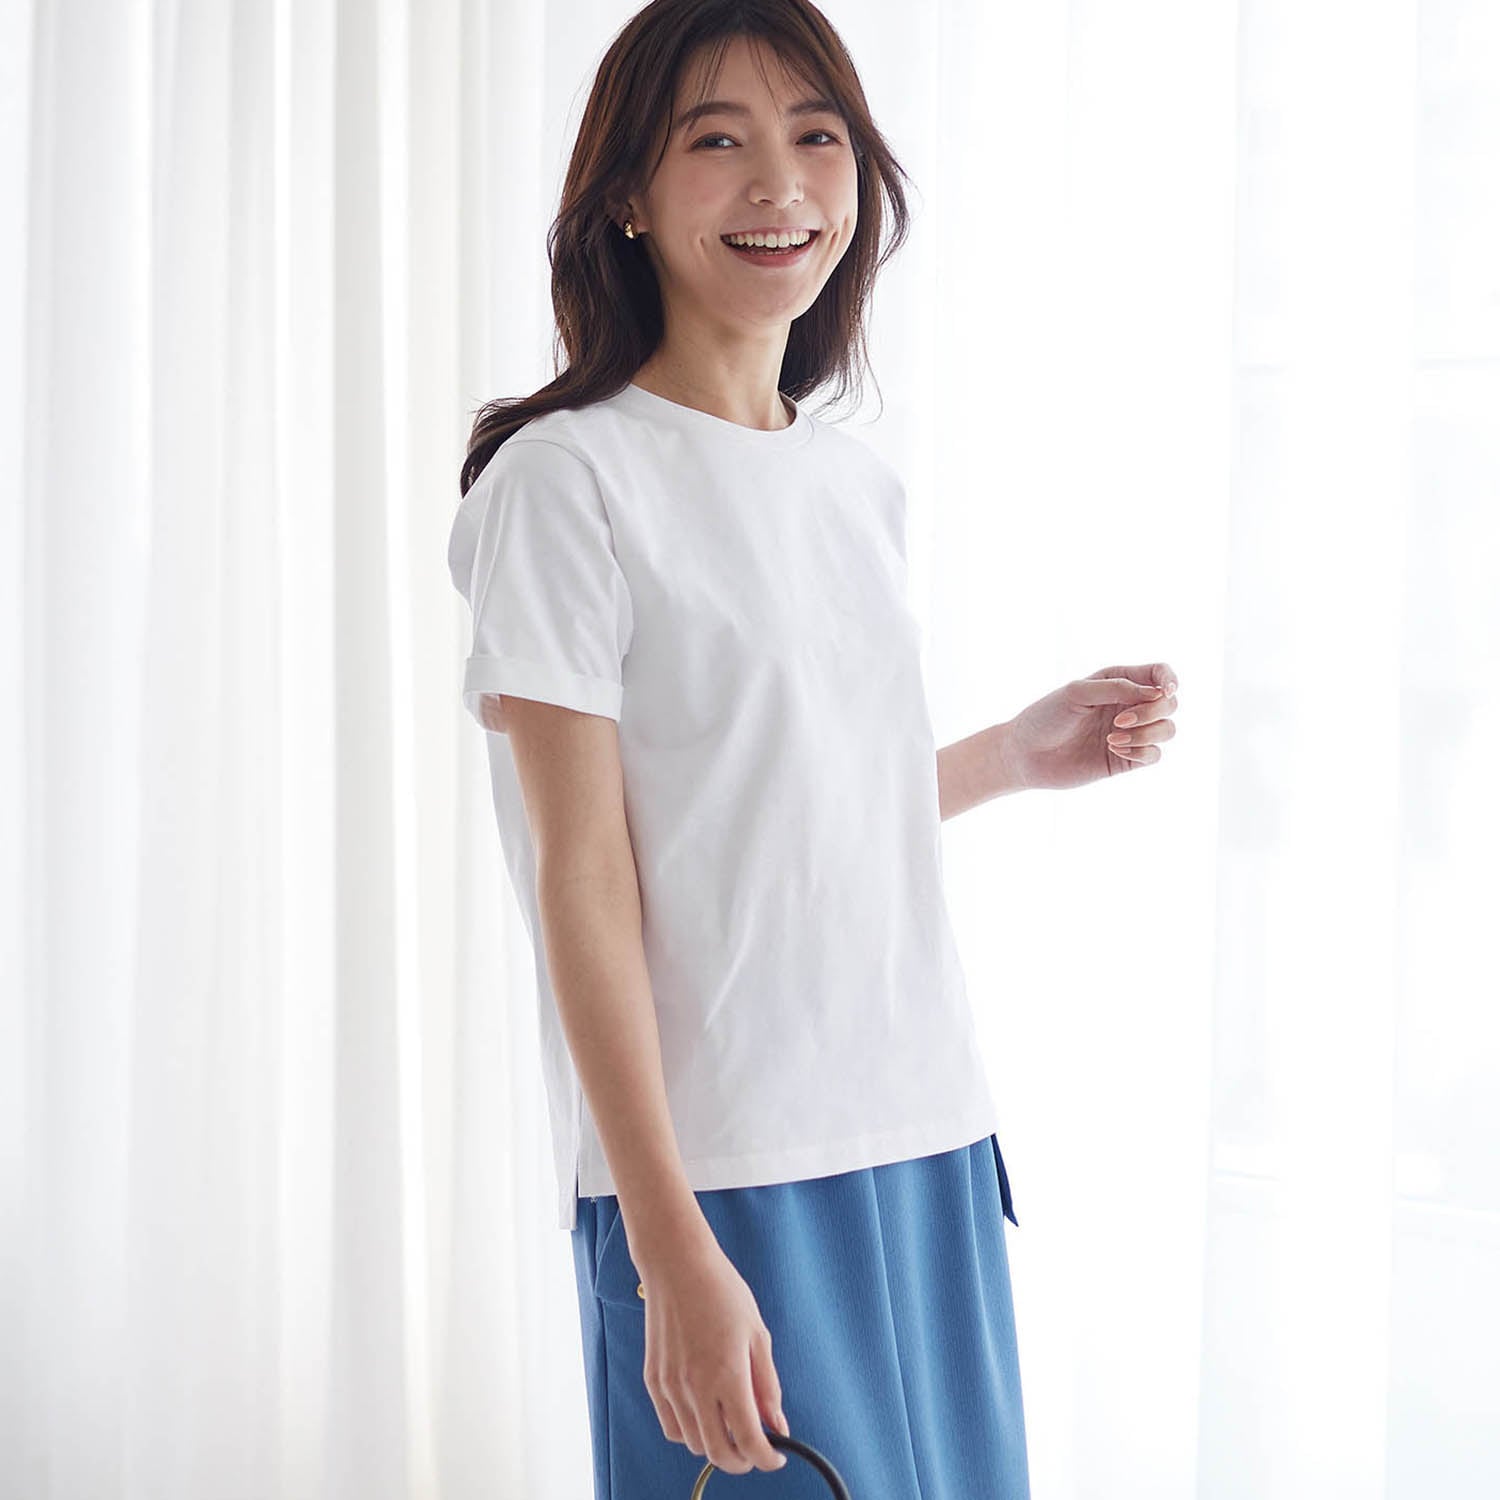 大人女性のために仕立てた理想の白Tシャツ[日本製] 【Tシャツ】 S